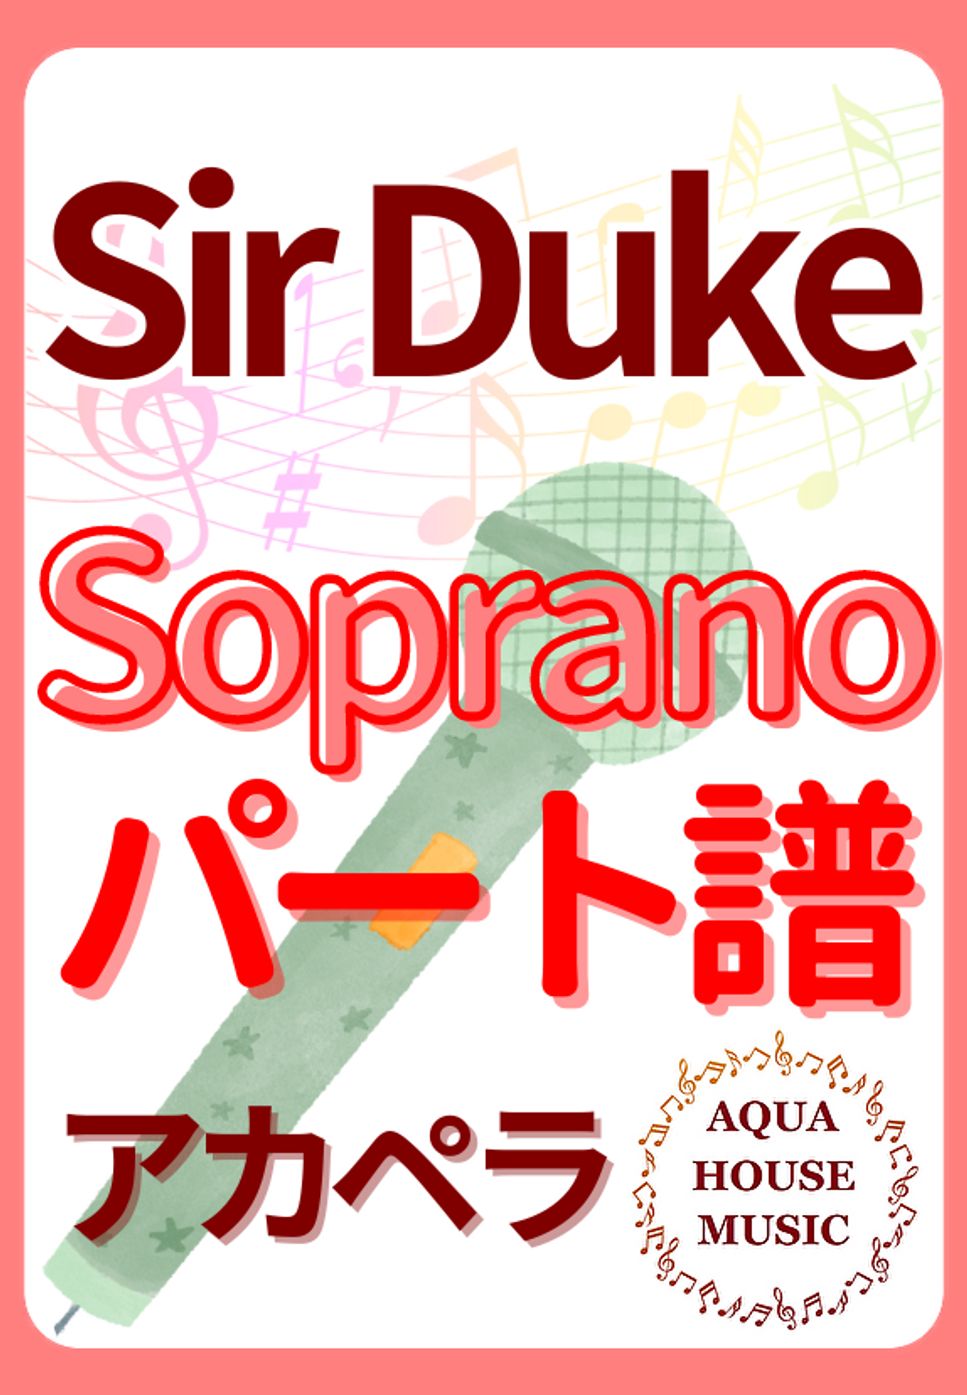 Stevie Wonder - SIR DUKE (アカペラ楽譜♪Sopranoパート譜) by 飯田 亜紗子